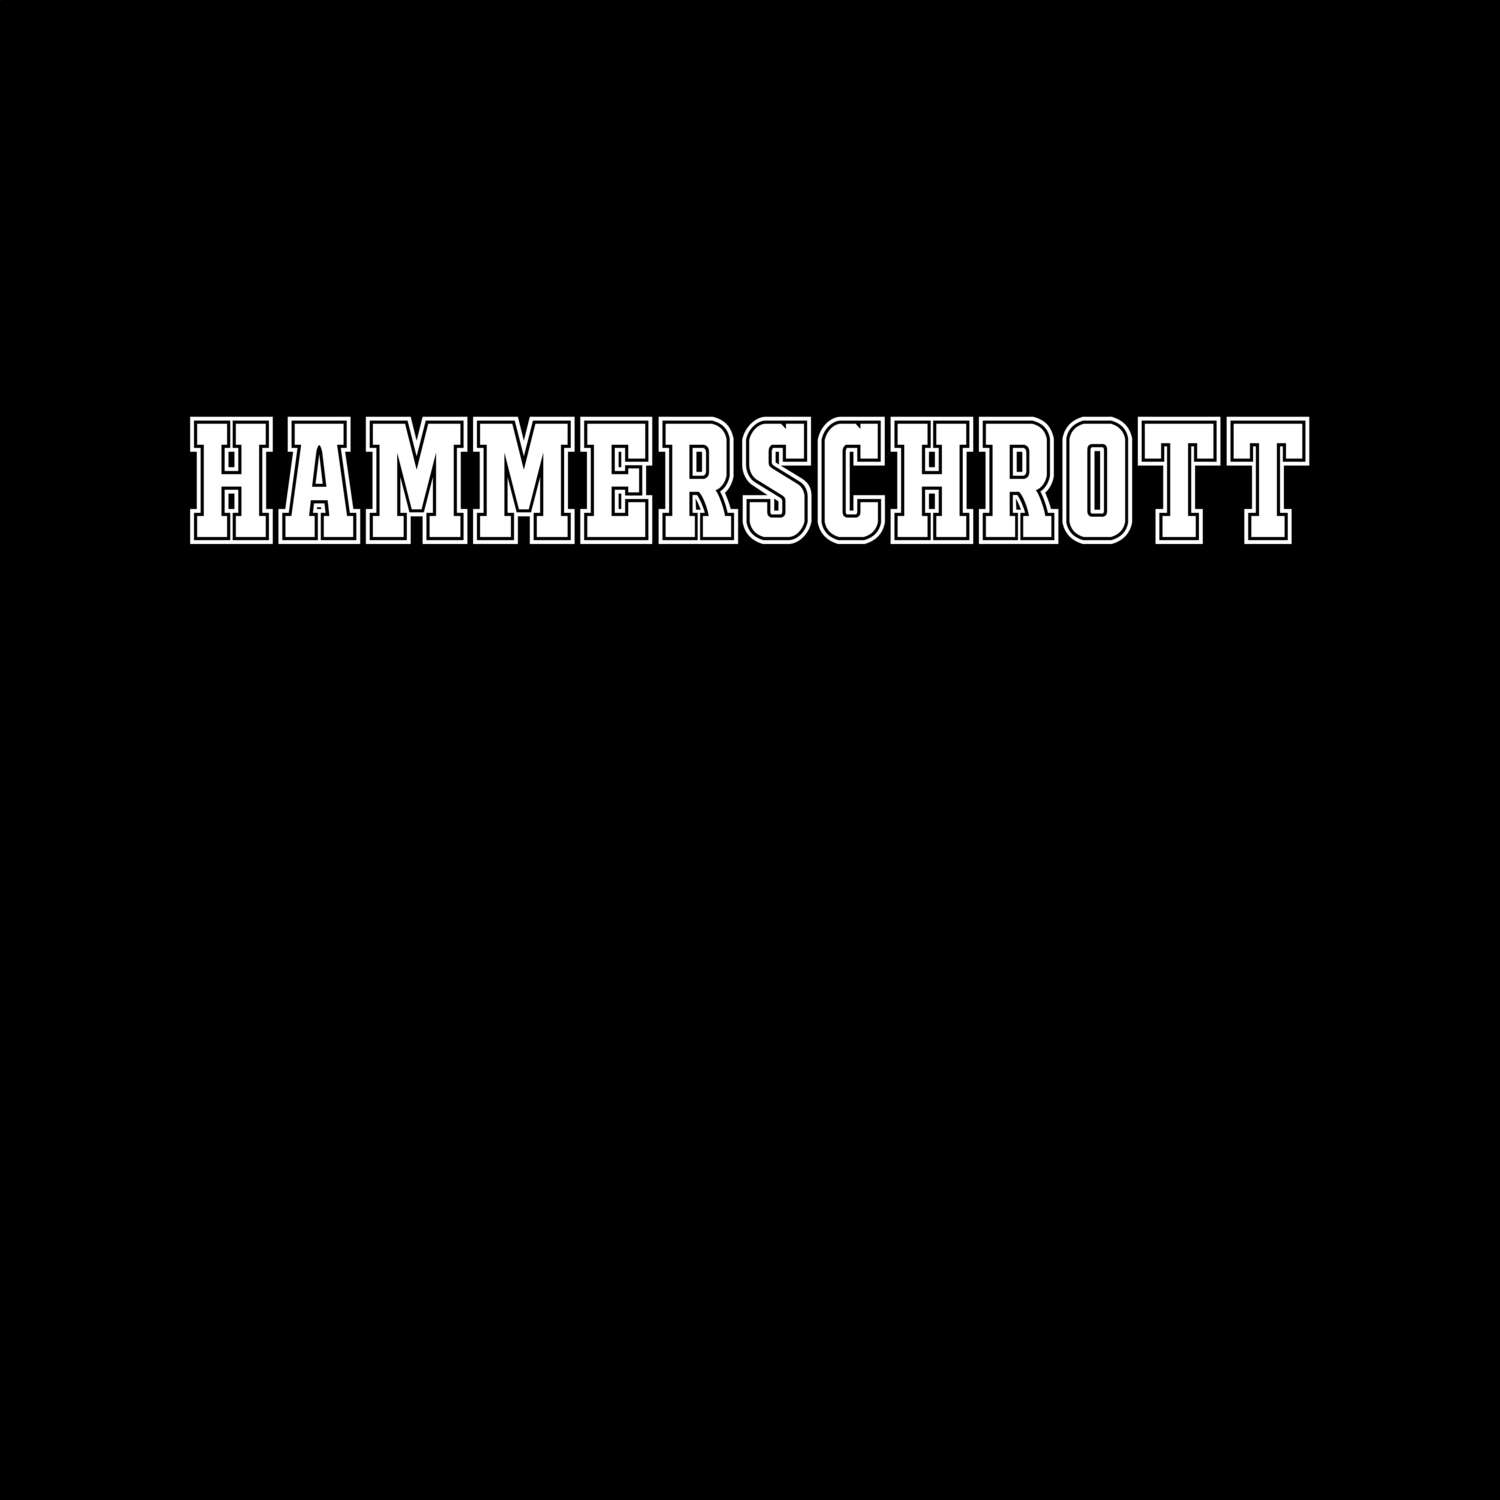 Hammerschrott T-Shirt »Classic«